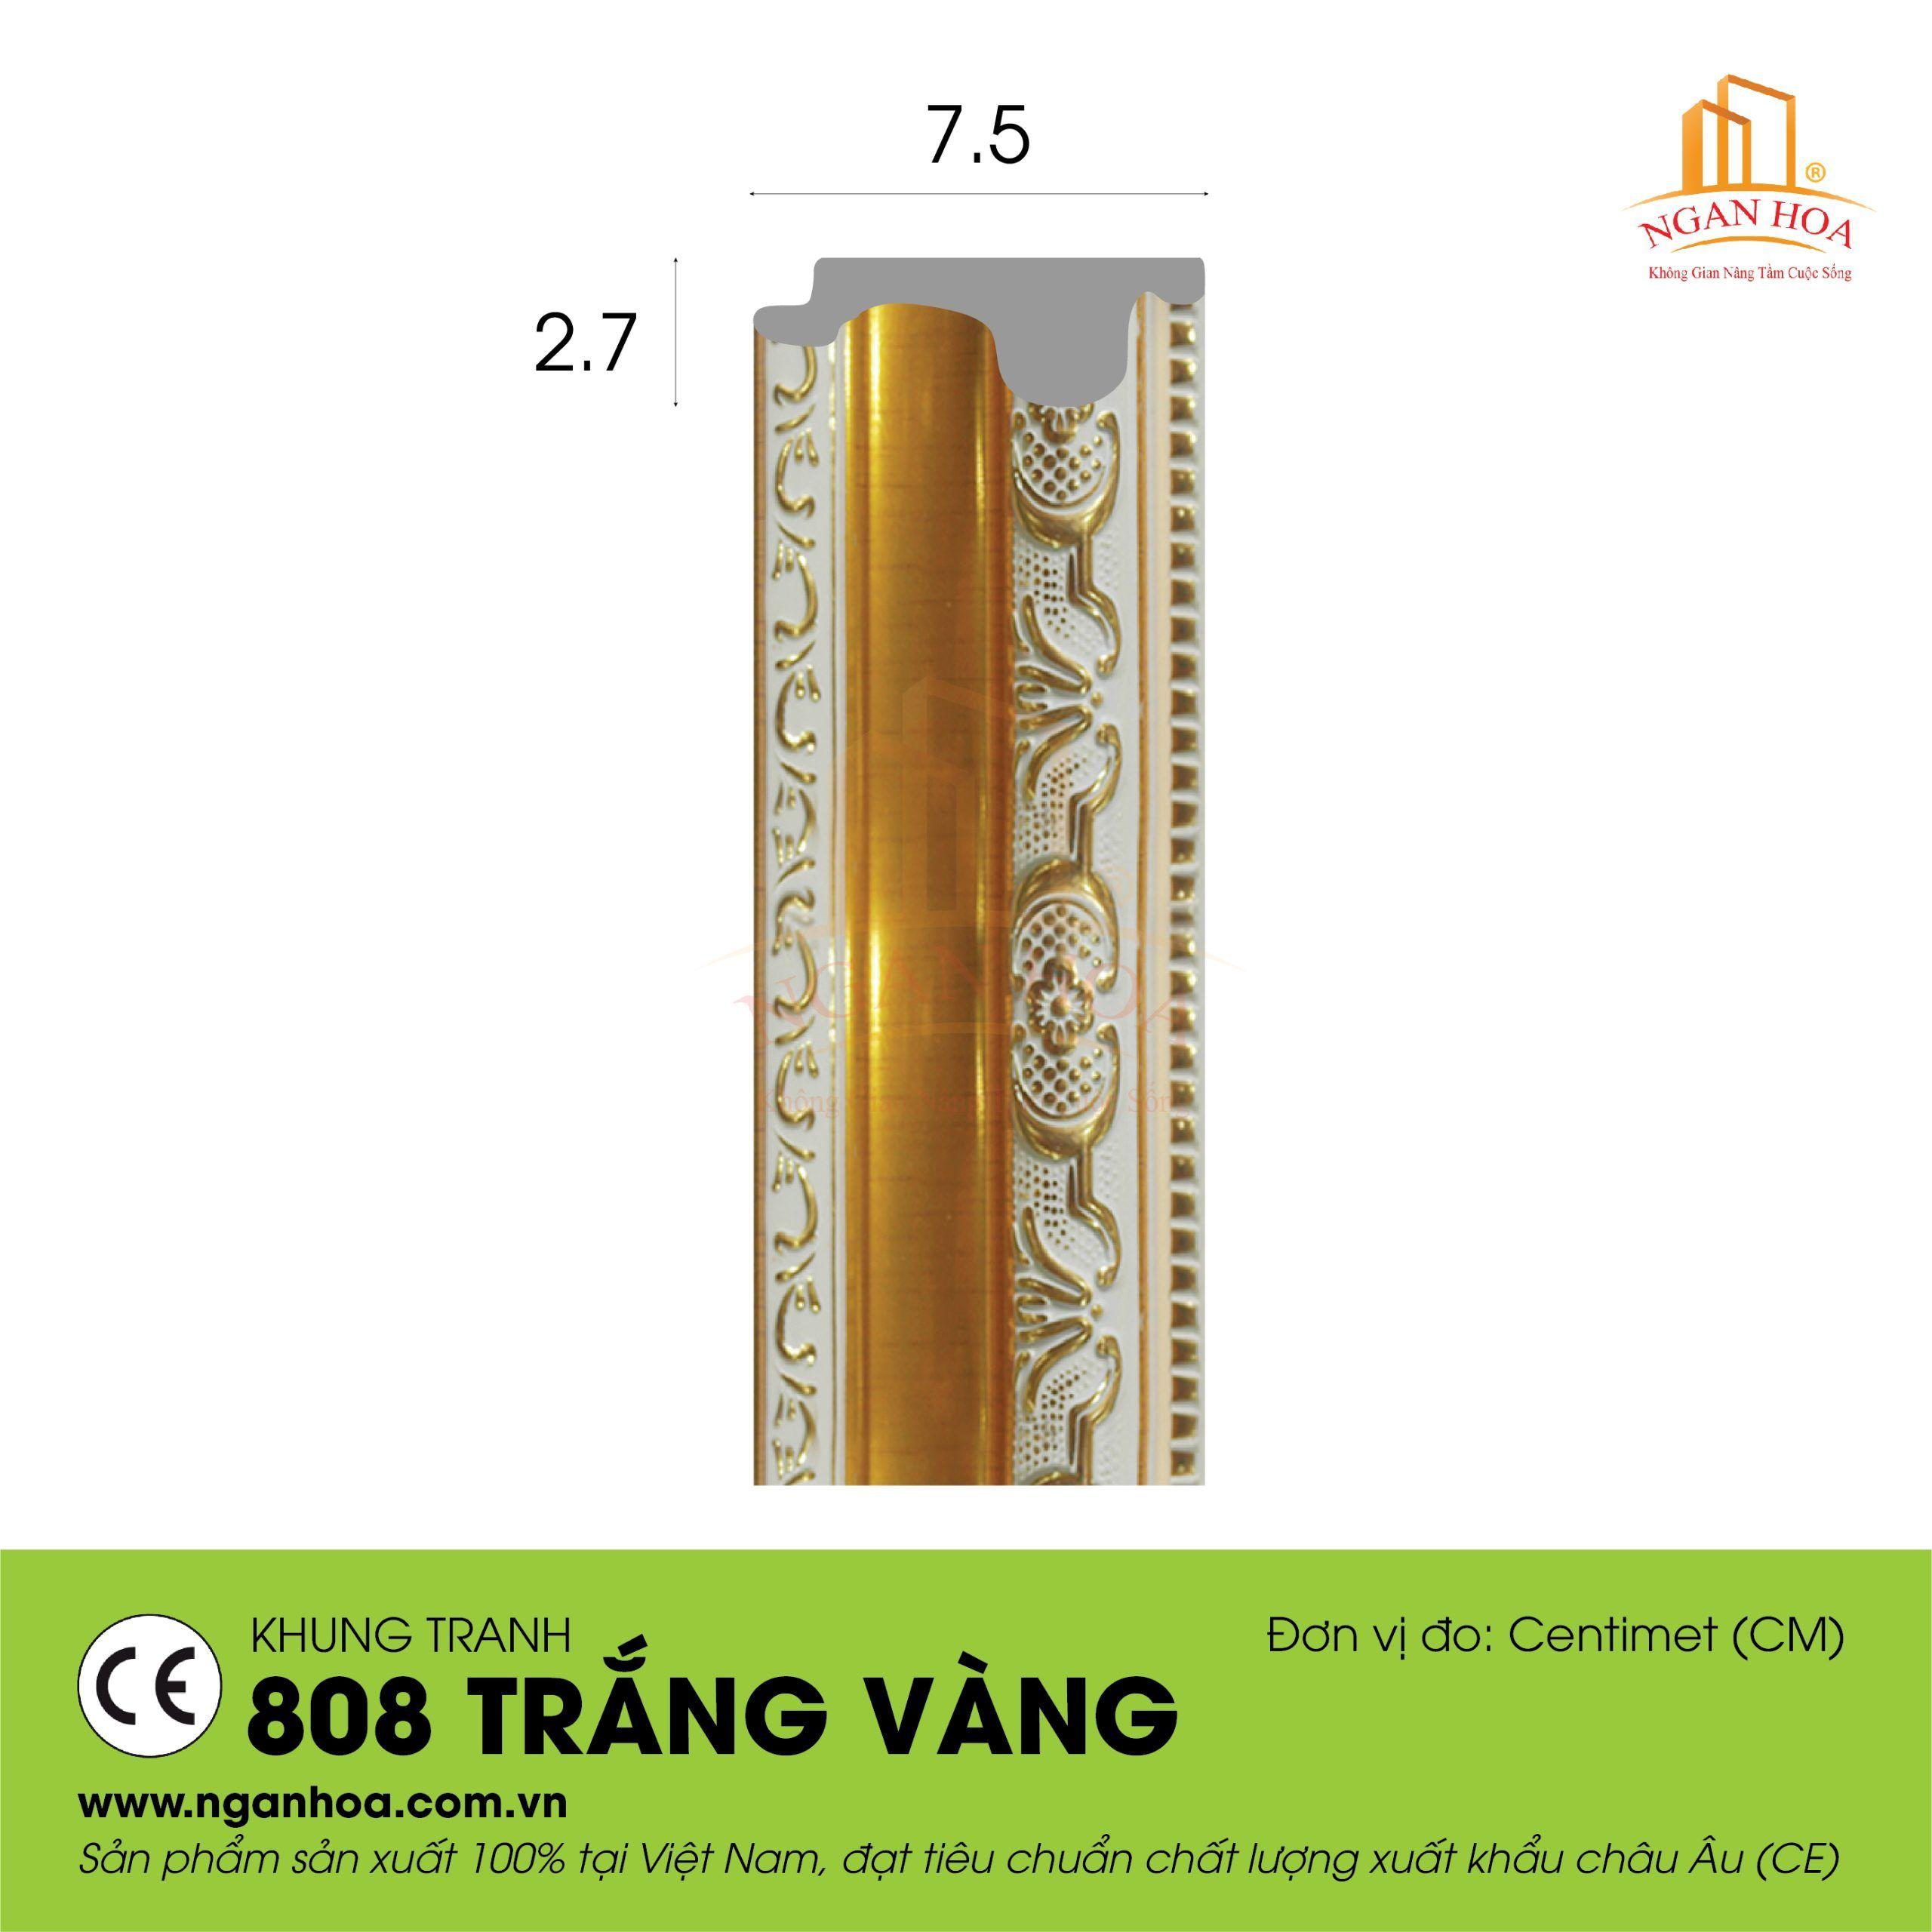 KT 808 Trang vang scaled